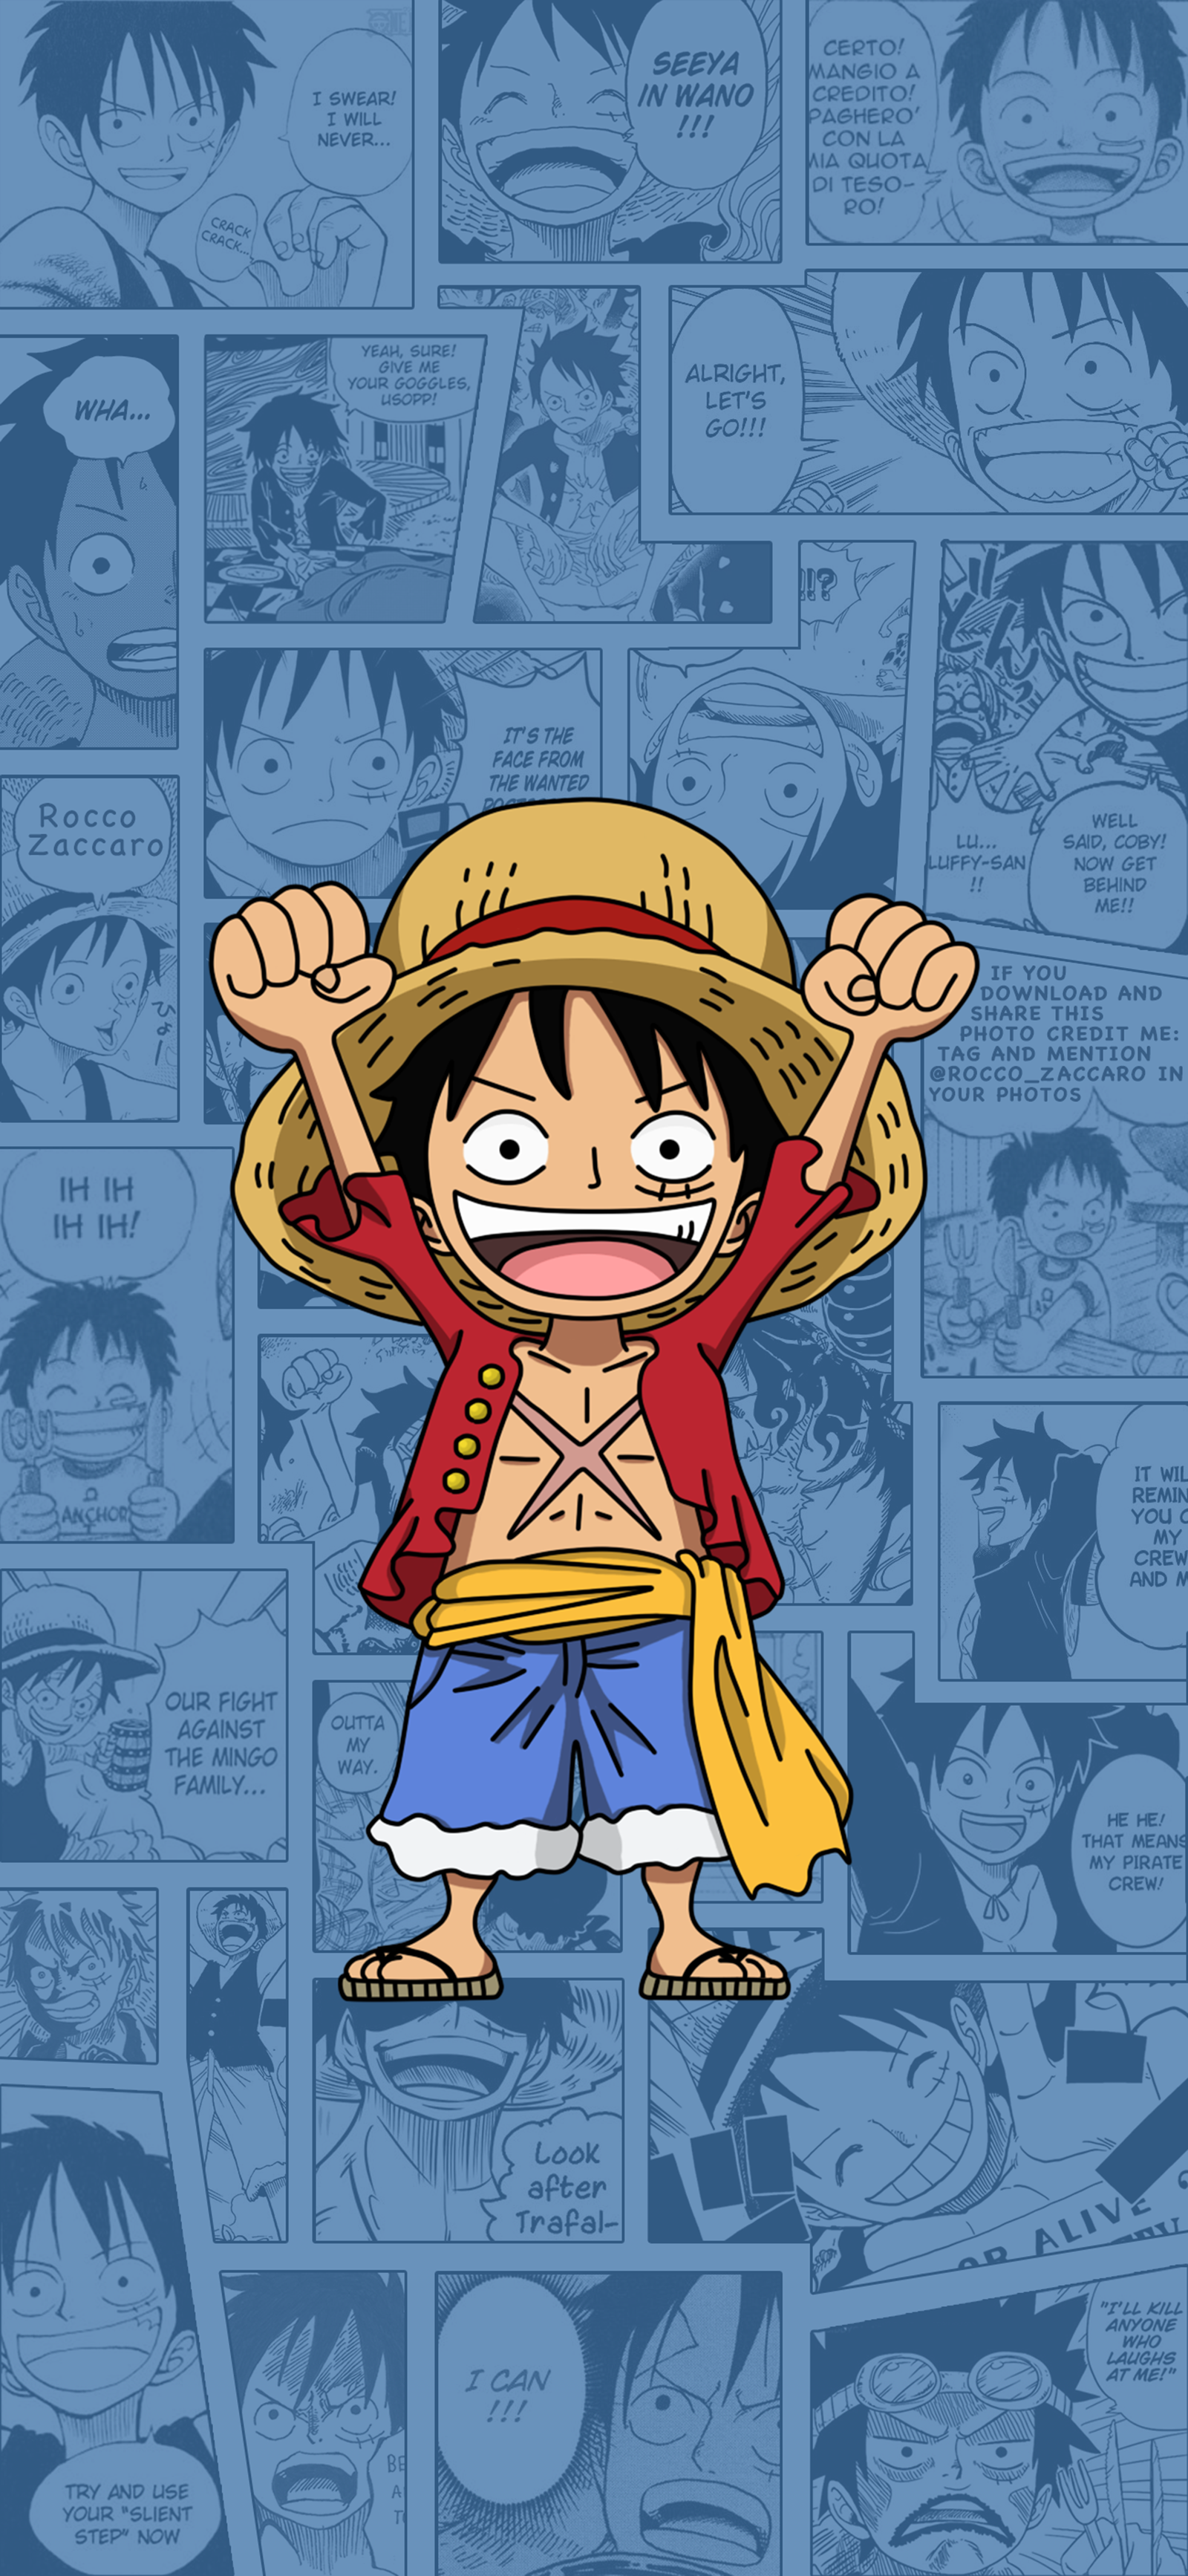 Luffy dễ thương - Xem ảnh Luffy này để cảm nhận được sự đáng yêu của nhân vật chính trong bộ truyện One Piece. Với giọng nói vui nhộn và những biểu cảm dễ thương, Luffy đã chinh phục trái tim của nhiều người hâm mộ truyện tranh.